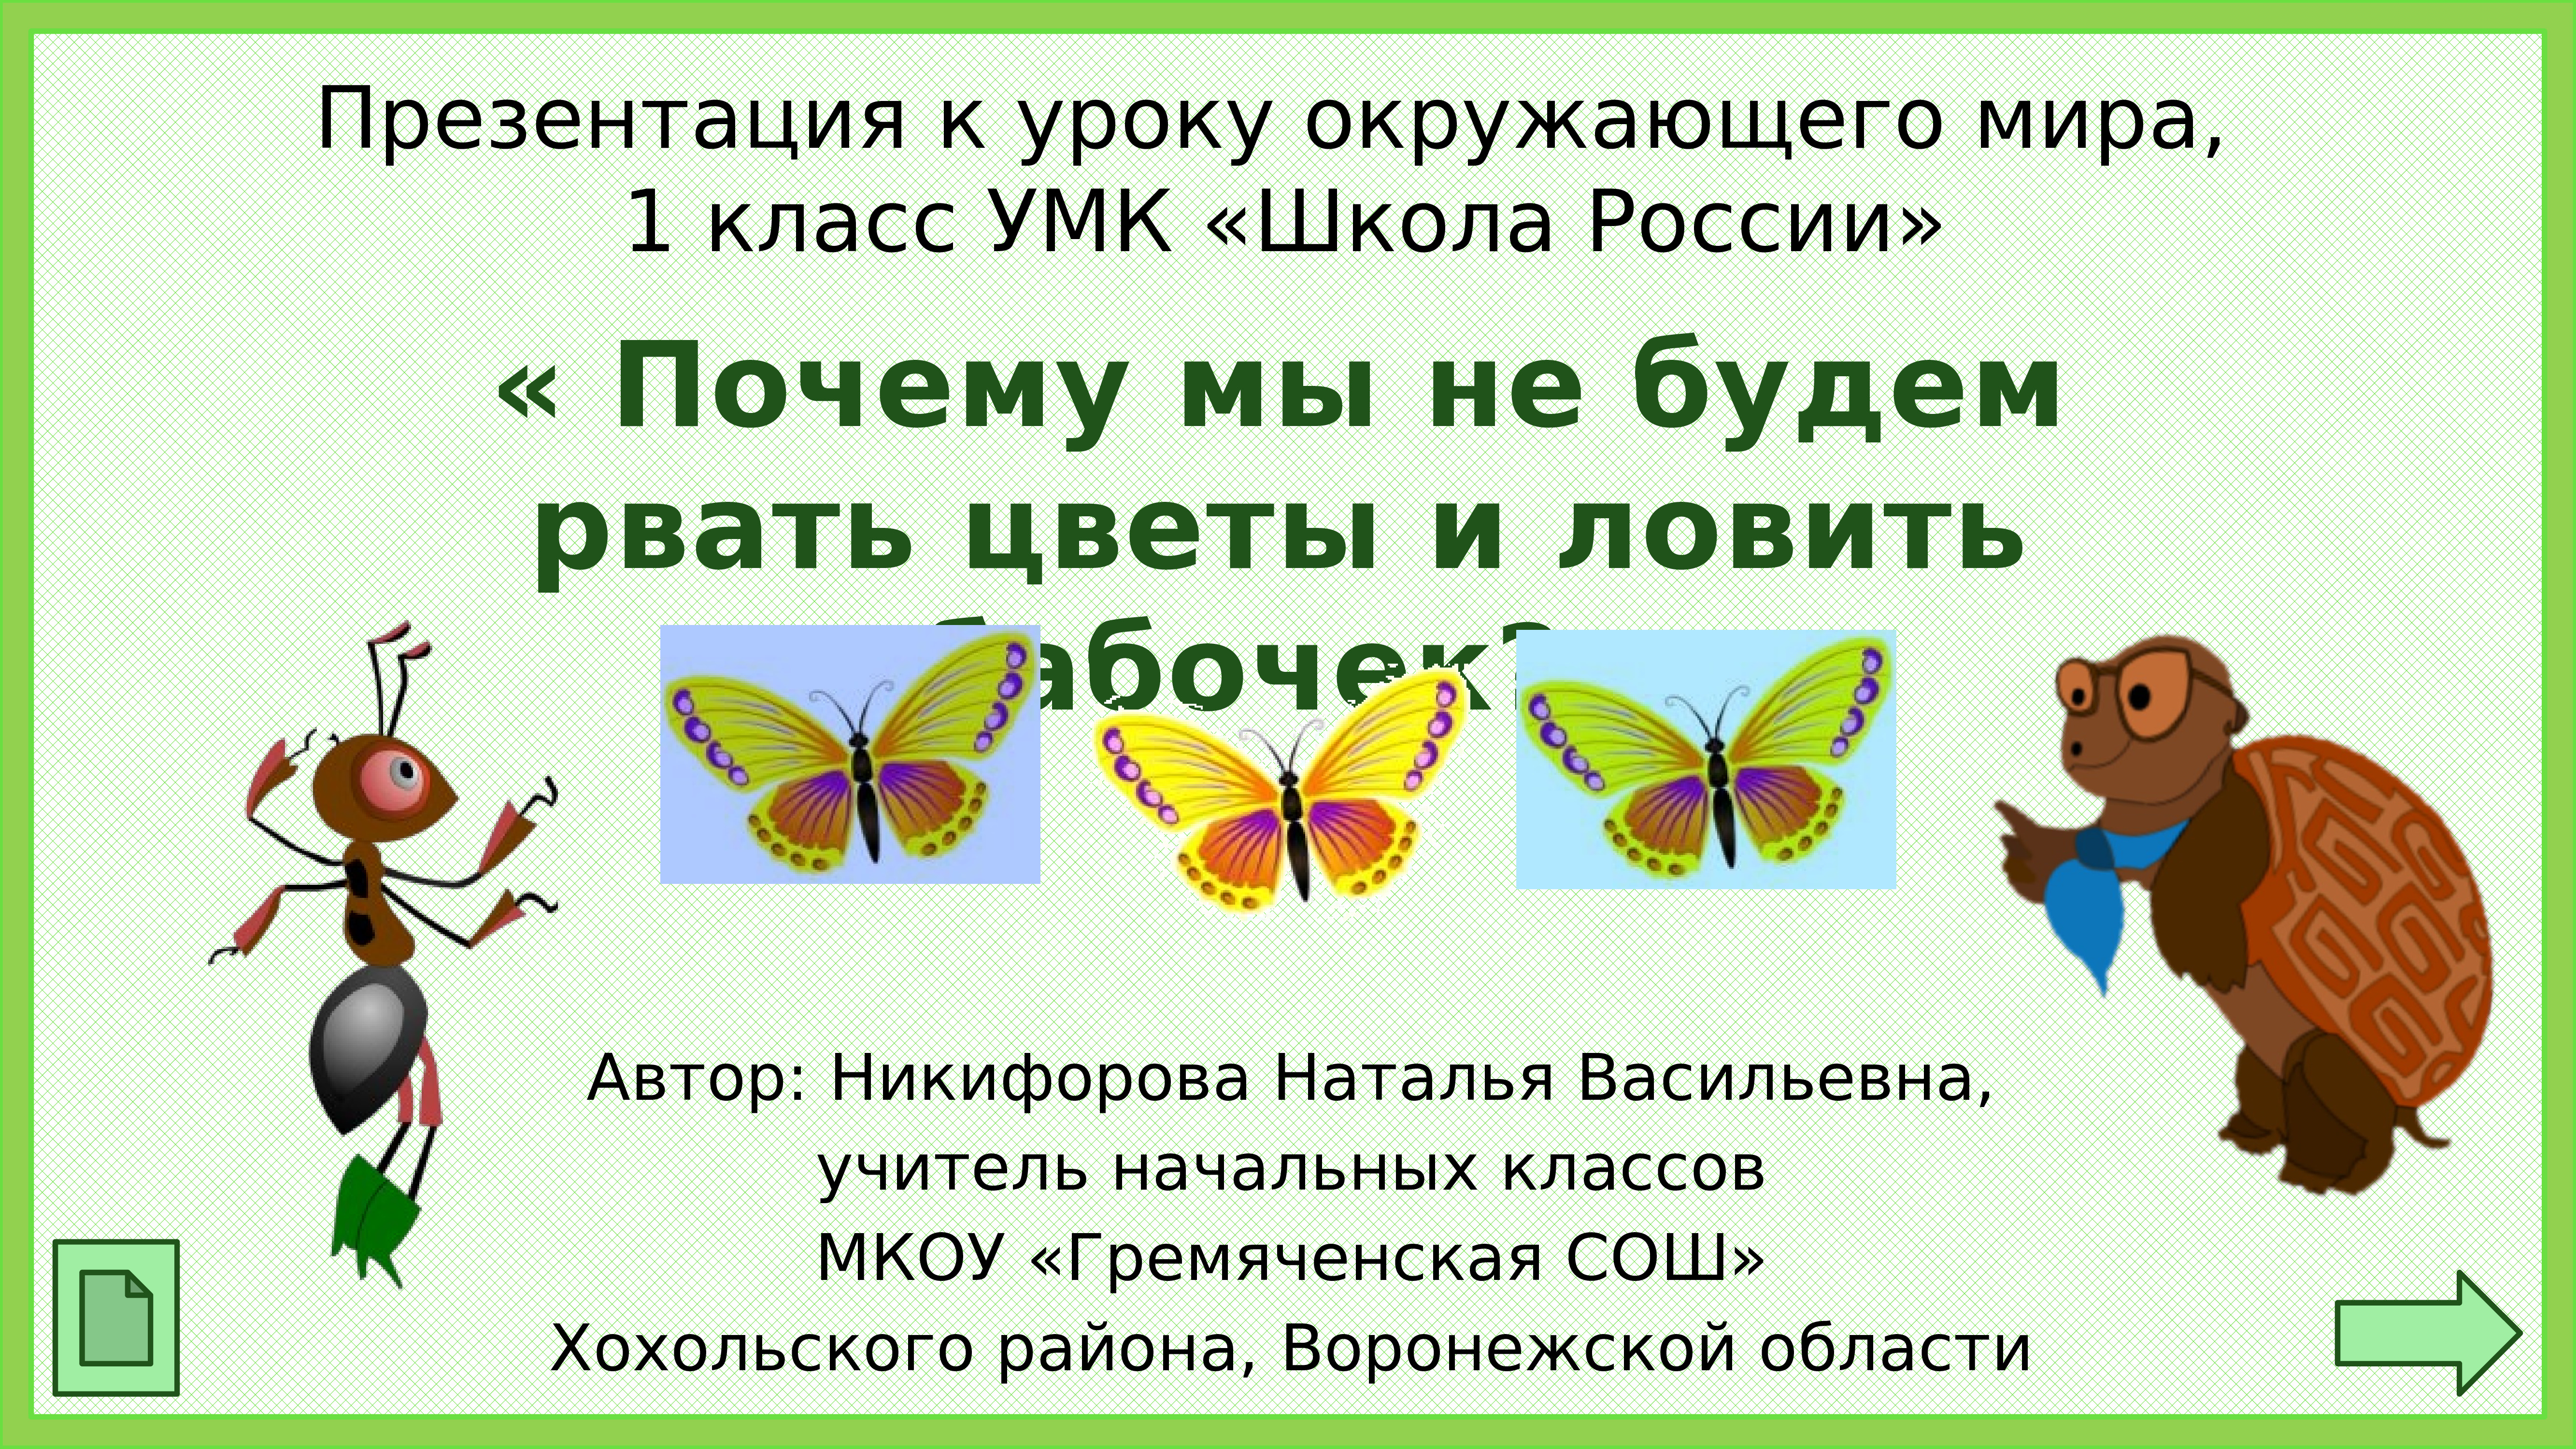 Презентация лучший друг 1 класс школа россии. Почему мы не будет рвать цветы и ловить бабочек. Окружающий мир 1 класс почему мы не будем рвать цветы и ловить бабочек.